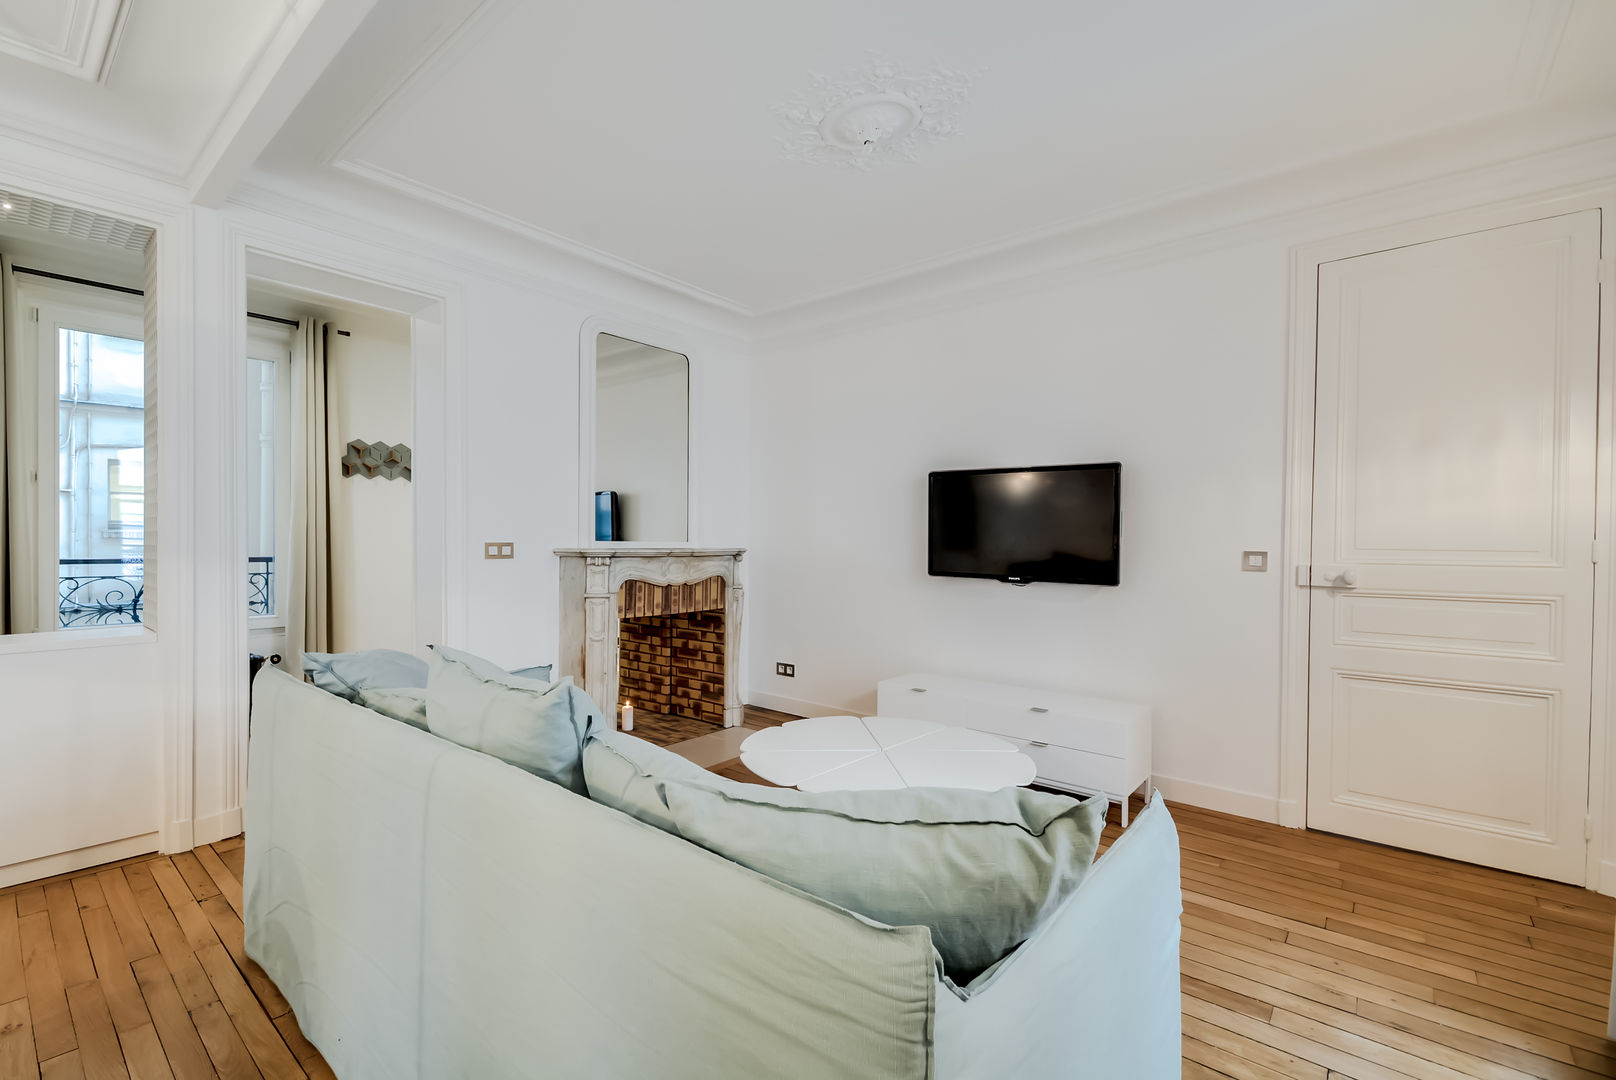 Un Appartement locatif saisonnier au coeur de Paris, ATELIER FB ATELIER FB Salon moderne